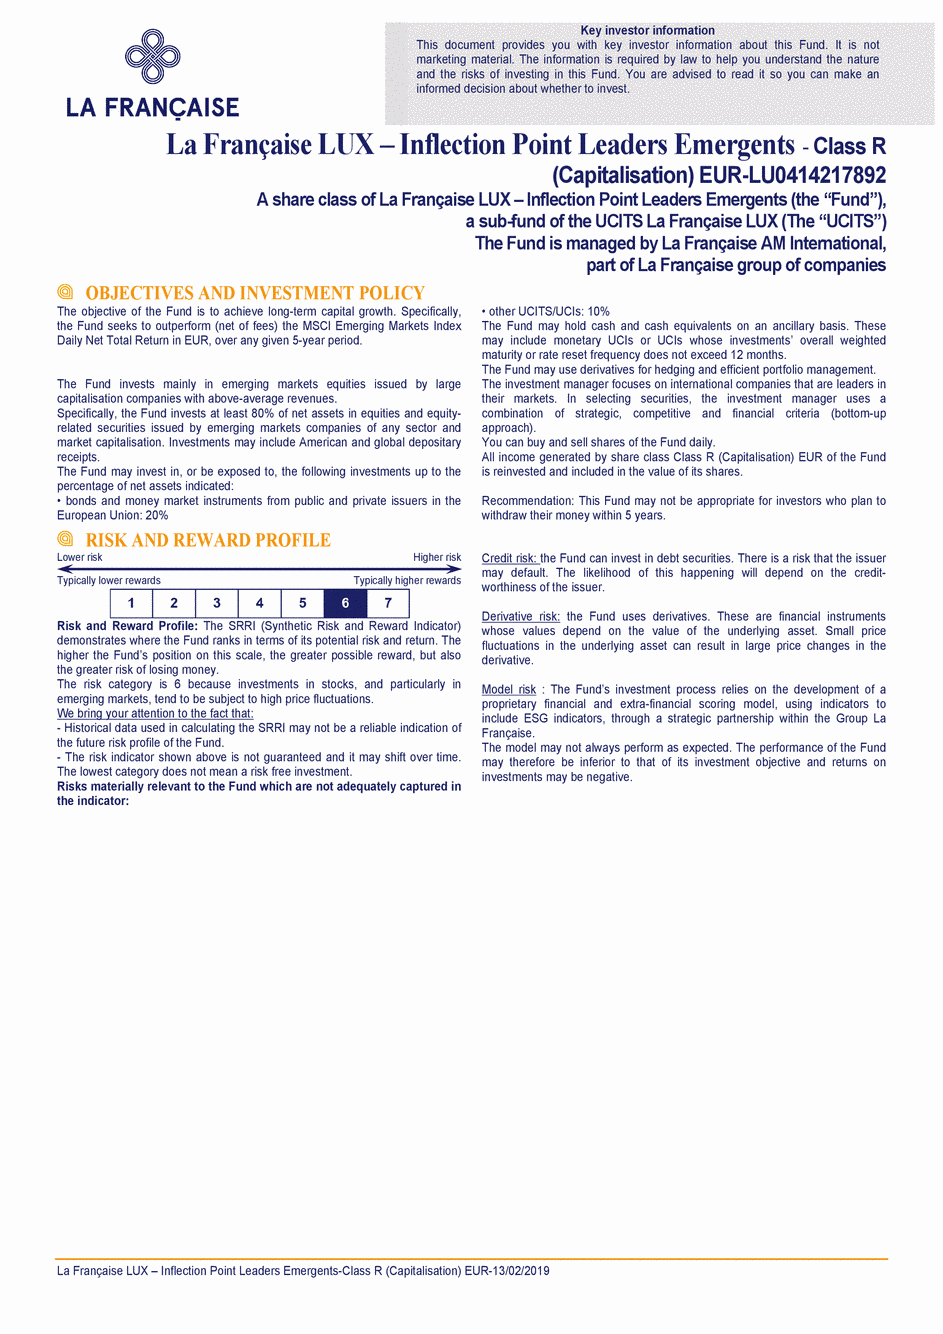 DICI La Française LUX - Inflection Point Leaders Emergents - R (C) EUR - 13/02/2019 - Anglais